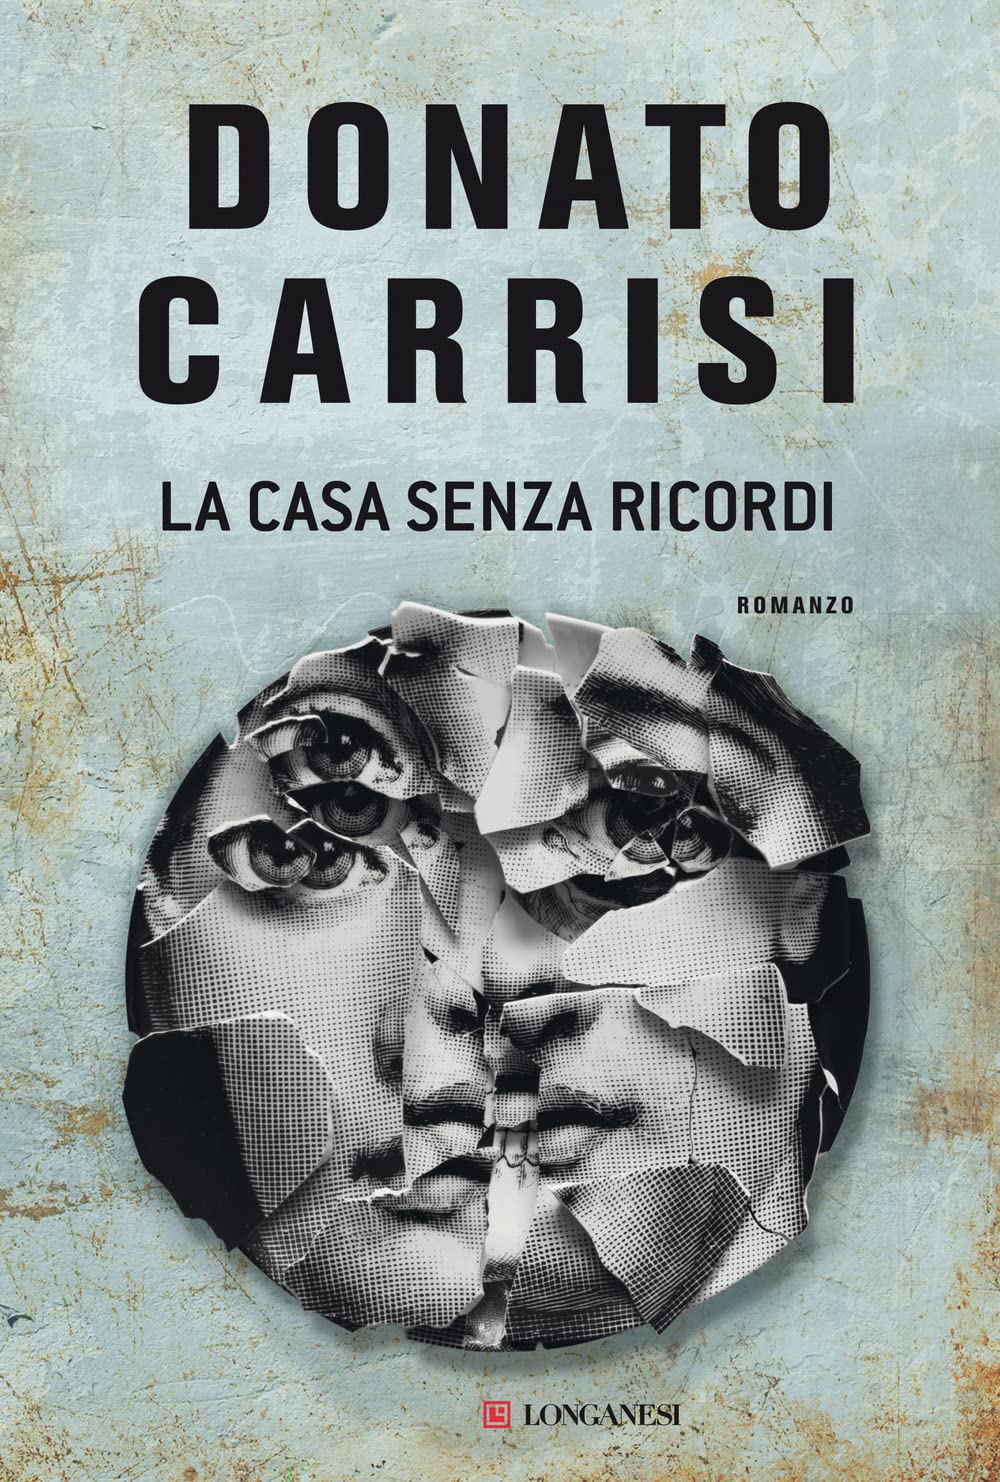 Donato Carrisi – La Casa Senza Ricordi